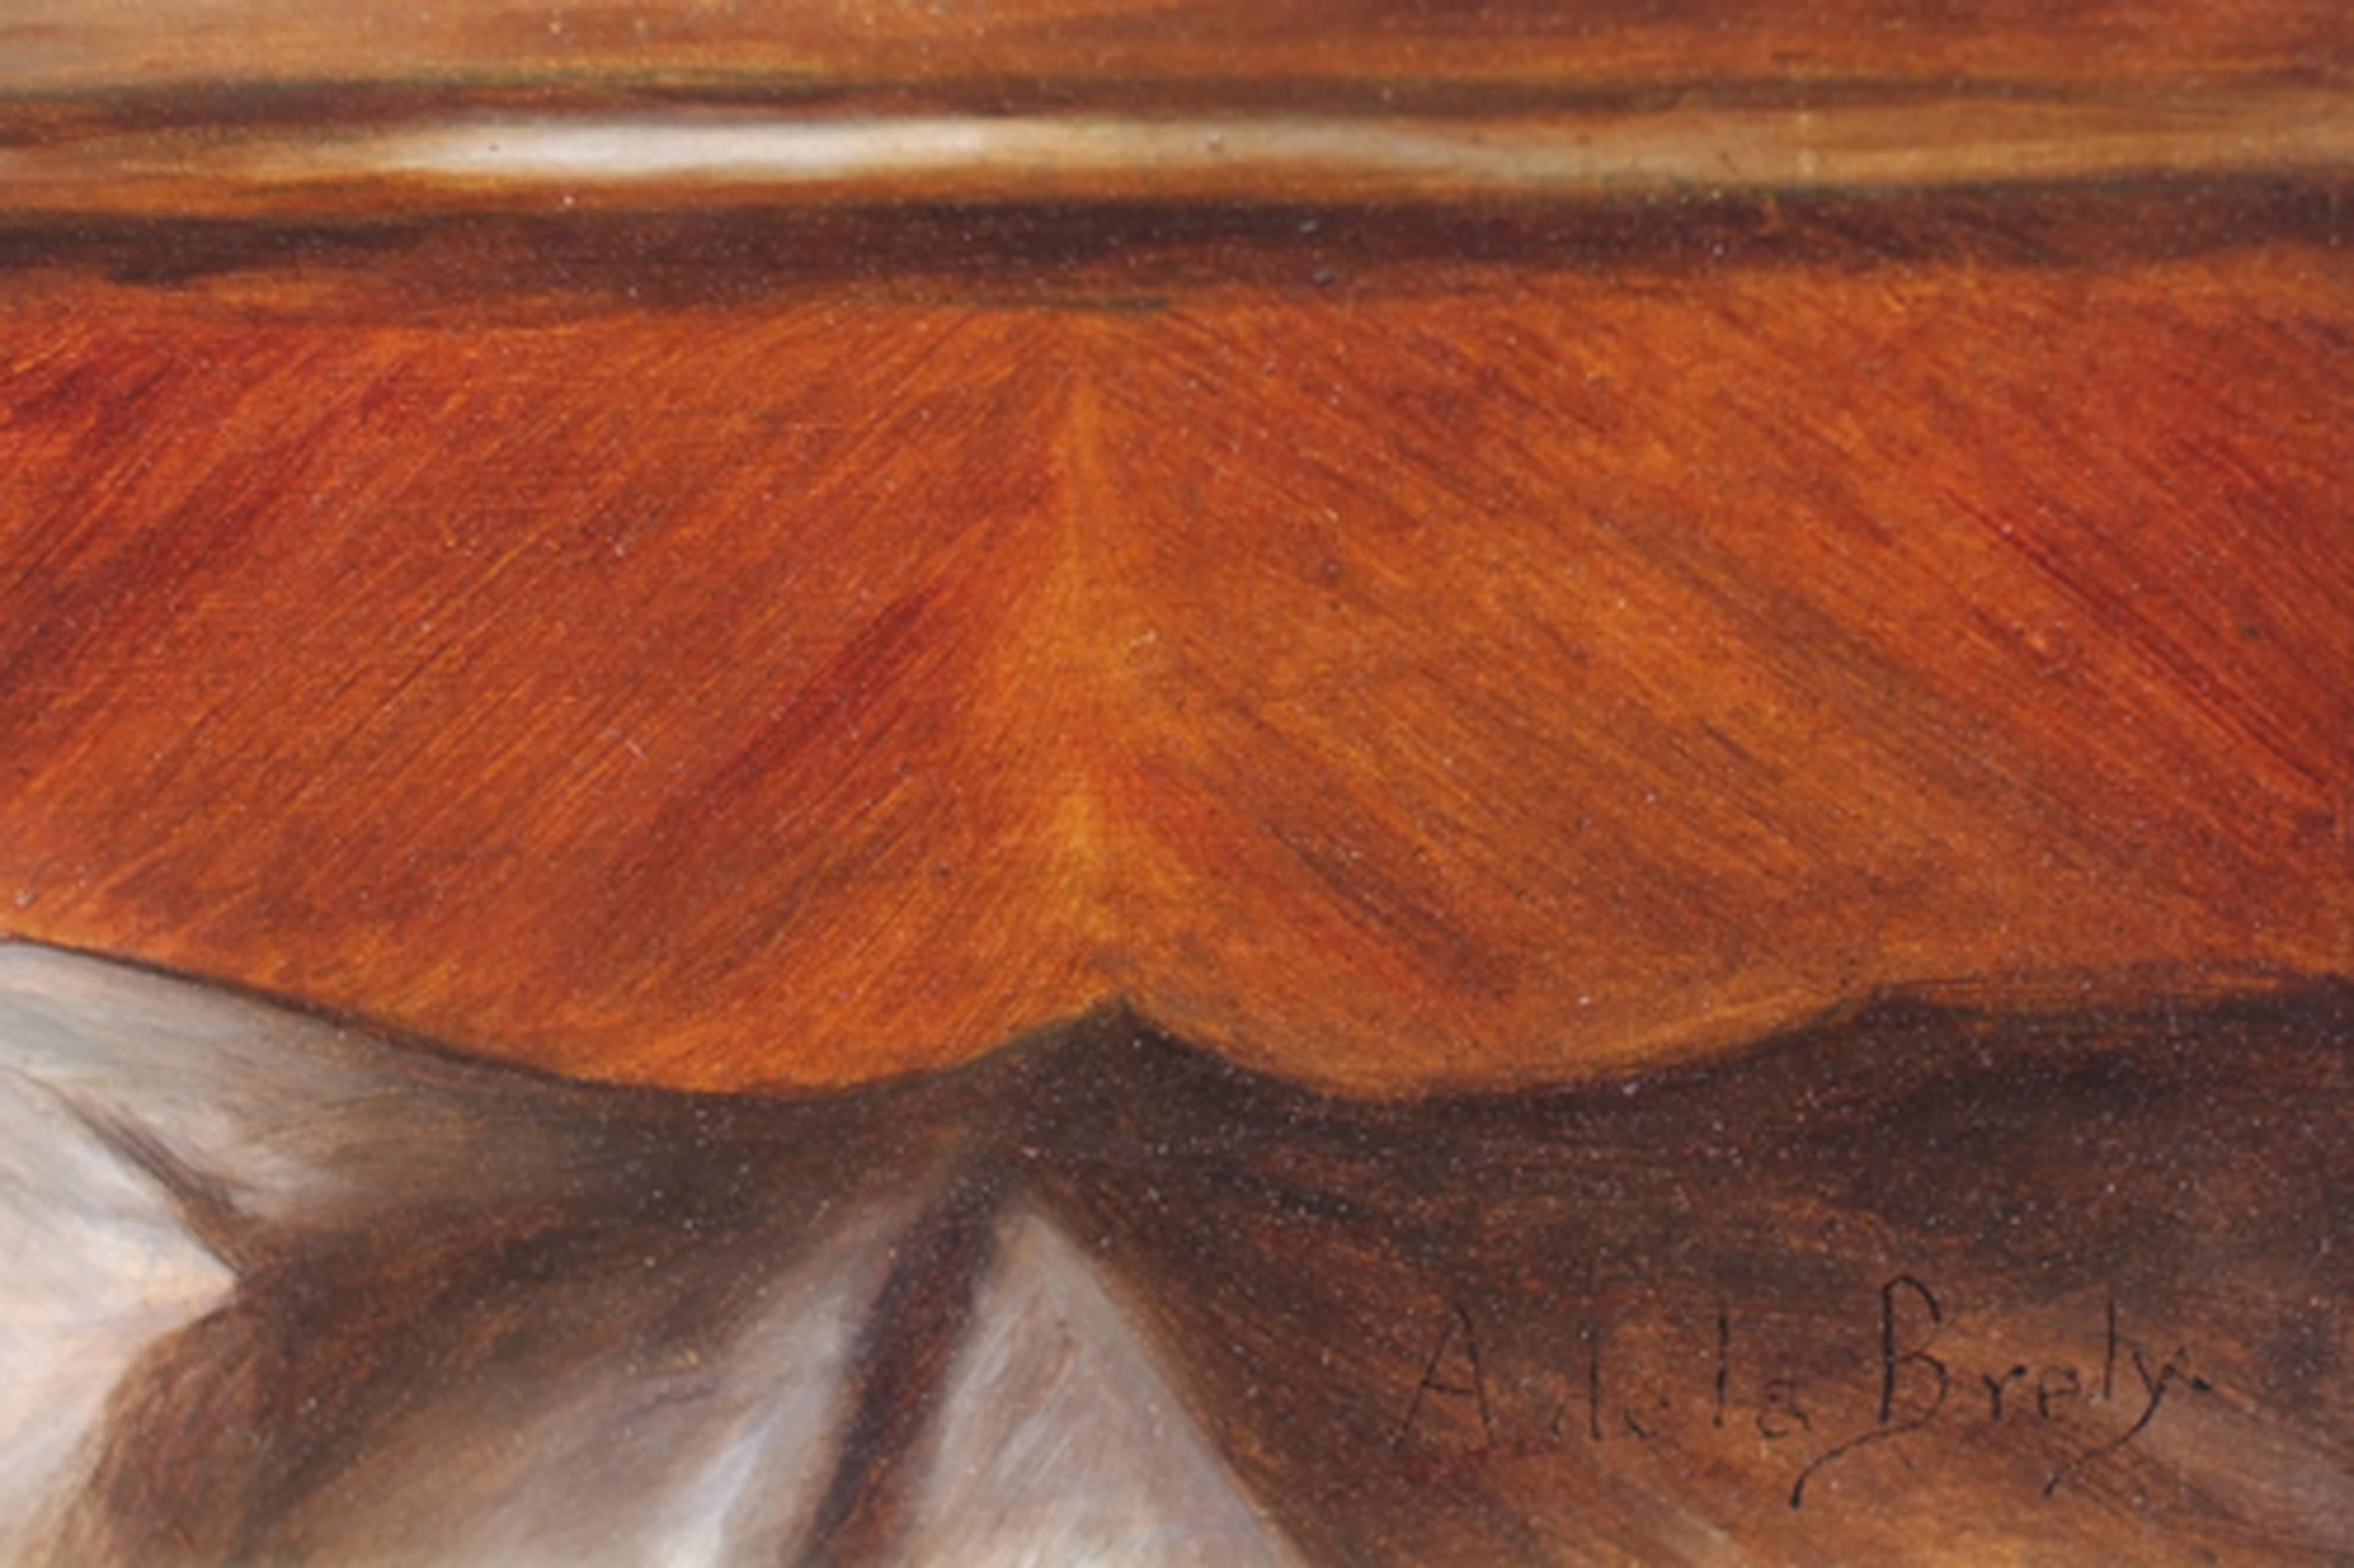 Junge Jungfrau am Schreibtisch (Braun), Portrait Painting, von LA BRELY Auguste, de